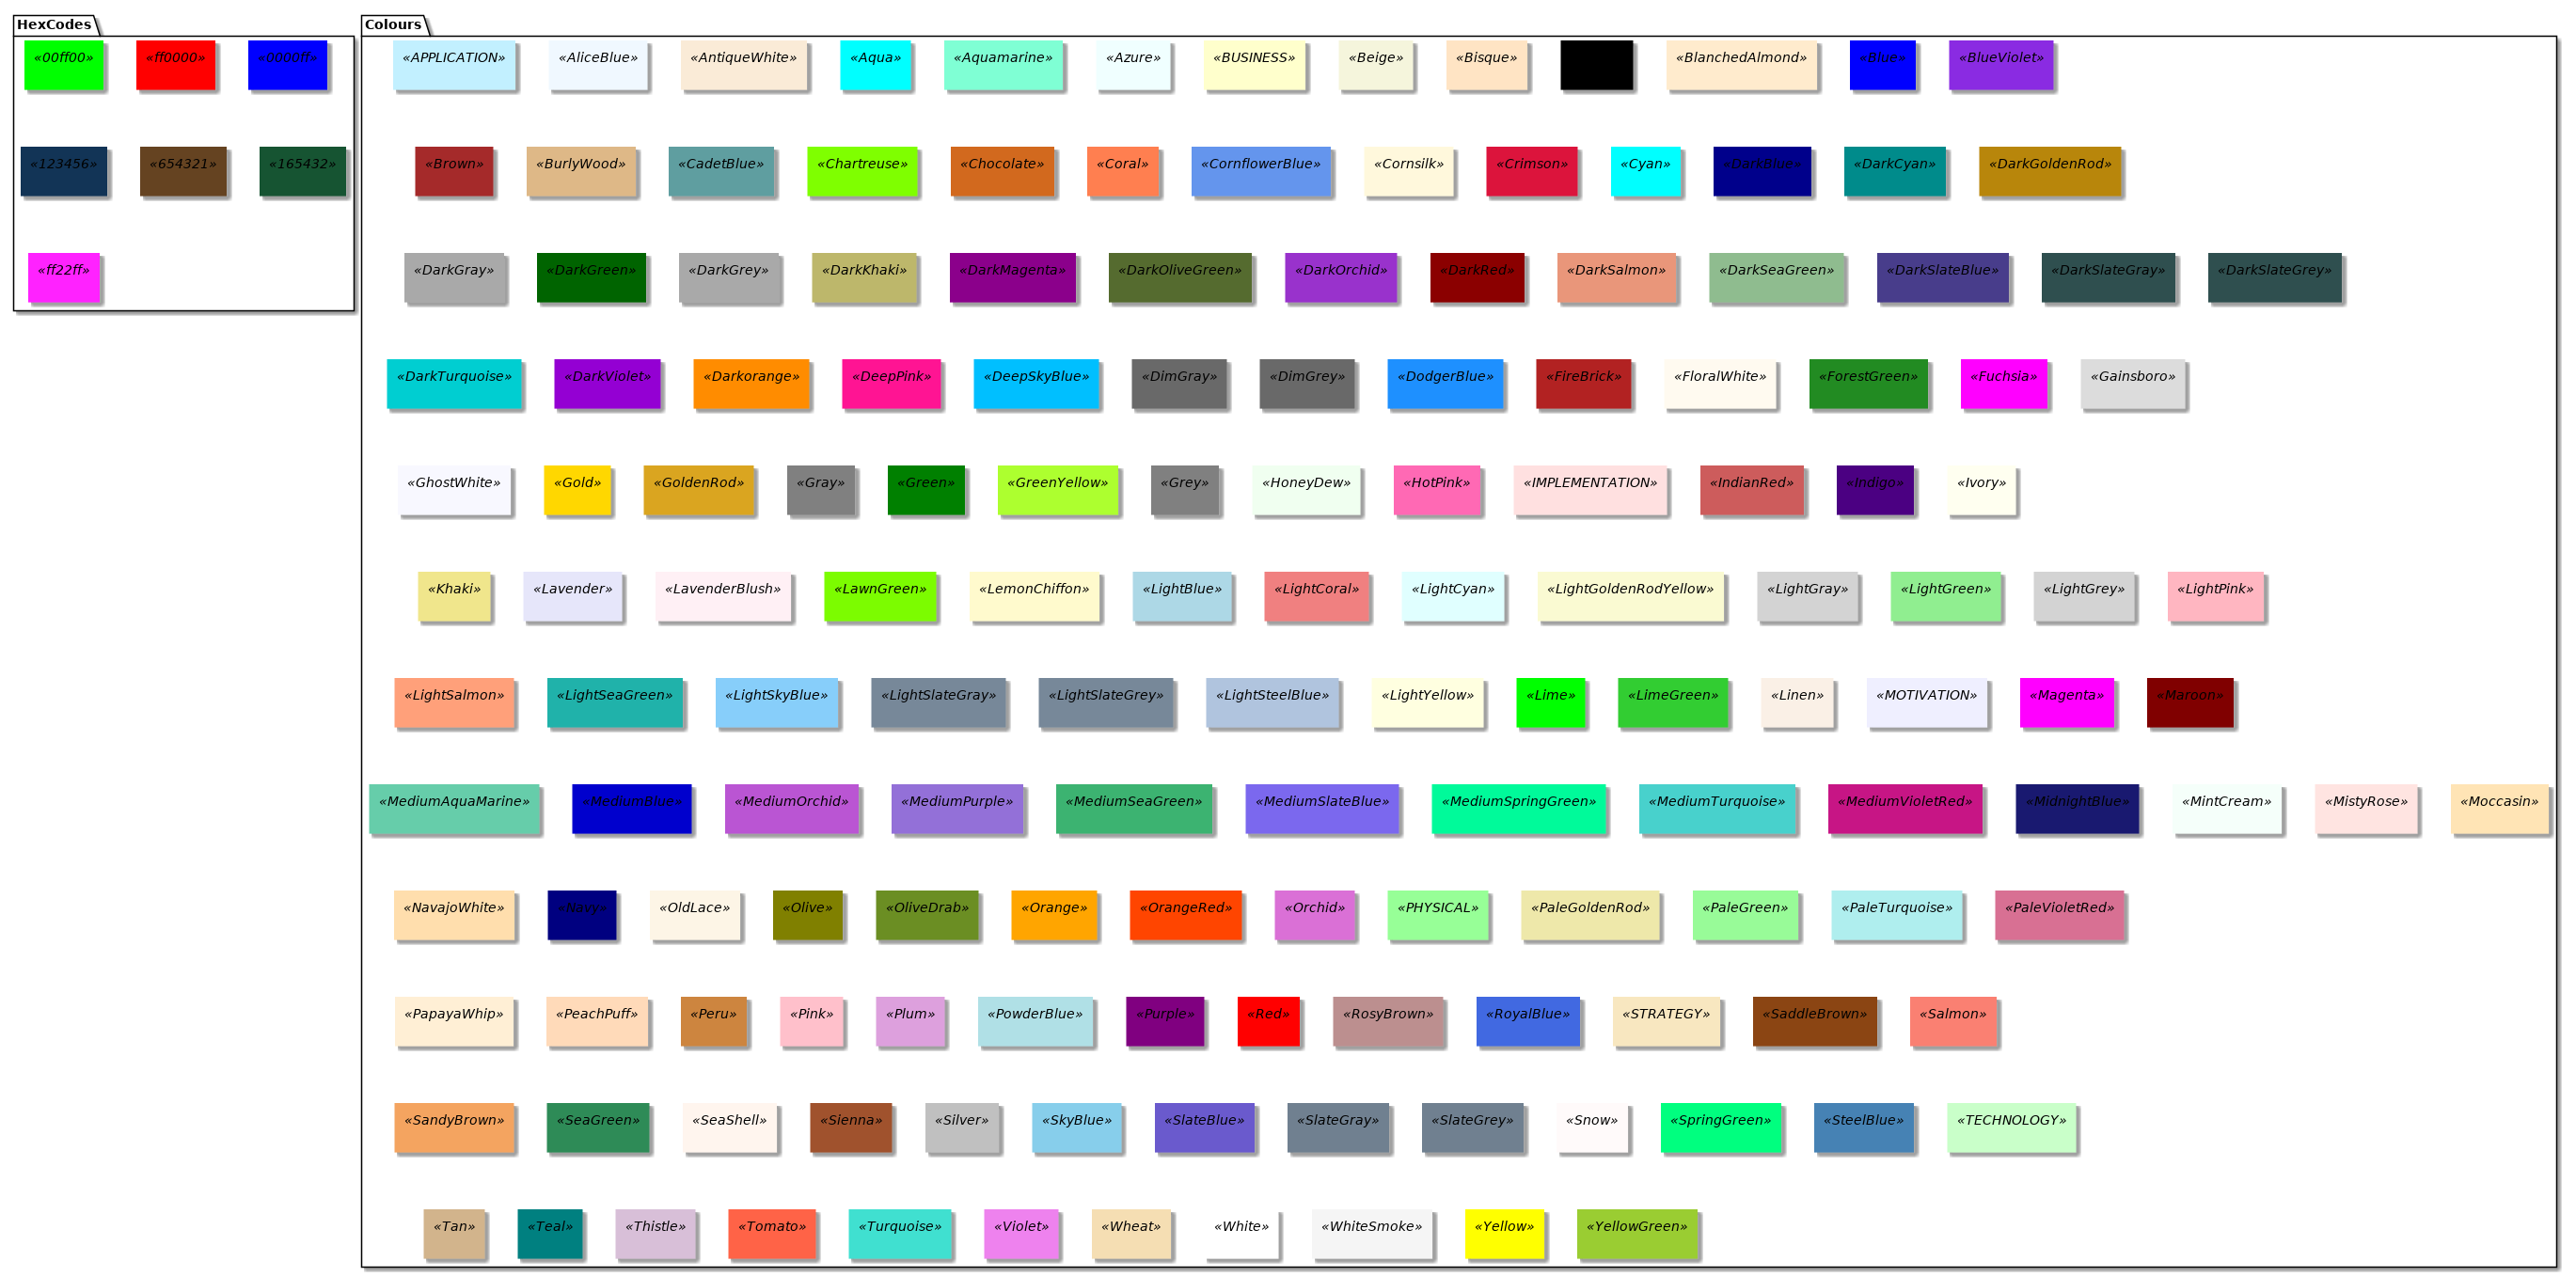 @startuml


!unquoted procedure $DrawColor($colour)

    skinparam rectangle {
            backgroundColor<<$colour>> $colour
            borderColor<<$colour>> $colour
            shadowing<<$colour>> true
            BorderThickness<<$colour>> 1
        }

    rectangle $colour <<$colour>> as "<color:$colour></color>"

!endprocedure

package HexCodes {
$DrawColor("00ff00")
$DrawColor("ff0000")
$DrawColor("0000ff")
$DrawColor("123456")
$DrawColor("654321")
$DrawColor("165432")
$DrawColor("ff22ff")
}

package Colours {
$DrawColor("APPLICATION")
$DrawColor("AliceBlue")
$DrawColor("AntiqueWhite")
$DrawColor("Aqua")
$DrawColor("Aquamarine")
$DrawColor("Azure")
$DrawColor("BUSINESS")
$DrawColor("Beige")
$DrawColor("Bisque")
$DrawColor("Black")
$DrawColor("BlanchedAlmond")
$DrawColor("Blue")
$DrawColor("BlueViolet")
$DrawColor("Brown")
$DrawColor("BurlyWood")
$DrawColor("CadetBlue")
$DrawColor("Chartreuse")
$DrawColor("Chocolate")
$DrawColor("Coral")
$DrawColor("CornflowerBlue")
$DrawColor("Cornsilk")
$DrawColor("Crimson")
$DrawColor("Cyan")
$DrawColor("DarkBlue")
$DrawColor("DarkCyan")
$DrawColor("DarkGoldenRod")
$DrawColor("DarkGray")
$DrawColor("DarkGreen")
$DrawColor("DarkGrey")
$DrawColor("DarkKhaki")
$DrawColor("DarkMagenta")
$DrawColor("DarkOliveGreen")
$DrawColor("DarkOrchid")
$DrawColor("DarkRed")
$DrawColor("DarkSalmon")
$DrawColor("DarkSeaGreen")
$DrawColor("DarkSlateBlue")
$DrawColor("DarkSlateGray")
$DrawColor("DarkSlateGrey")
$DrawColor("DarkTurquoise")
$DrawColor("DarkViolet")
$DrawColor("Darkorange")
$DrawColor("DeepPink")
$DrawColor("DeepSkyBlue")
$DrawColor("DimGray")
$DrawColor("DimGrey")
$DrawColor("DodgerBlue")
$DrawColor("FireBrick")
$DrawColor("FloralWhite")
$DrawColor("ForestGreen")
$DrawColor("Fuchsia")
$DrawColor("Gainsboro")
$DrawColor("GhostWhite")
$DrawColor("Gold")
$DrawColor("GoldenRod")
$DrawColor("Gray")
$DrawColor("Green")
$DrawColor("GreenYellow")
$DrawColor("Grey")
$DrawColor("HoneyDew")
$DrawColor("HotPink")
$DrawColor("IMPLEMENTATION")
$DrawColor("IndianRed")
$DrawColor("Indigo")
$DrawColor("Ivory")
$DrawColor("Khaki")
$DrawColor("Lavender")
$DrawColor("LavenderBlush")
$DrawColor("LawnGreen")
$DrawColor("LemonChiffon")
$DrawColor("LightBlue")
$DrawColor("LightCoral")
$DrawColor("LightCyan")
$DrawColor("LightGoldenRodYellow")
$DrawColor("LightGray")
$DrawColor("LightGreen")
$DrawColor("LightGrey")
$DrawColor("LightPink")
$DrawColor("LightSalmon")
$DrawColor("LightSeaGreen")
$DrawColor("LightSkyBlue")
$DrawColor("LightSlateGray")
$DrawColor("LightSlateGrey")
$DrawColor("LightSteelBlue")
$DrawColor("LightYellow")
$DrawColor("Lime")
$DrawColor("LimeGreen")
$DrawColor("Linen")
$DrawColor("MOTIVATION")
$DrawColor("Magenta")
$DrawColor("Maroon")
$DrawColor("MediumAquaMarine")
$DrawColor("MediumBlue")
$DrawColor("MediumOrchid")
$DrawColor("MediumPurple")
$DrawColor("MediumSeaGreen")
$DrawColor("MediumSlateBlue")
$DrawColor("MediumSpringGreen")
$DrawColor("MediumTurquoise")
$DrawColor("MediumVioletRed")
$DrawColor("MidnightBlue")
$DrawColor("MintCream")
$DrawColor("MistyRose")
$DrawColor("Moccasin")
$DrawColor("NavajoWhite")
$DrawColor("Navy")
$DrawColor("OldLace")
$DrawColor("Olive")
$DrawColor("OliveDrab")
$DrawColor("Orange")
$DrawColor("OrangeRed")
$DrawColor("Orchid")
$DrawColor("PHYSICAL")
$DrawColor("PaleGoldenRod")
$DrawColor("PaleGreen")
$DrawColor("PaleTurquoise")
$DrawColor("PaleVioletRed")
$DrawColor("PapayaWhip")
$DrawColor("PeachPuff")
$DrawColor("Peru")
$DrawColor("Pink")
$DrawColor("Plum")
$DrawColor("PowderBlue")
$DrawColor("Purple")
$DrawColor("Red")
$DrawColor("RosyBrown")
$DrawColor("RoyalBlue")
$DrawColor("STRATEGY")
$DrawColor("SaddleBrown")
$DrawColor("Salmon")
$DrawColor("SandyBrown")
$DrawColor("SeaGreen")
$DrawColor("SeaShell")
$DrawColor("Sienna")
$DrawColor("Silver")
$DrawColor("SkyBlue")
$DrawColor("SlateBlue")
$DrawColor("SlateGray")
$DrawColor("SlateGrey")
$DrawColor("Snow")
$DrawColor("SpringGreen")
$DrawColor("SteelBlue")
$DrawColor("TECHNOLOGY")
$DrawColor("Tan")
$DrawColor("Teal")
$DrawColor("Thistle")
$DrawColor("Tomato")
$DrawColor("Turquoise")
$DrawColor("Violet")
$DrawColor("Wheat")
$DrawColor("White")
$DrawColor("WhiteSmoke")
$DrawColor("Yellow")
$DrawColor("YellowGreen")

}
@enduml


